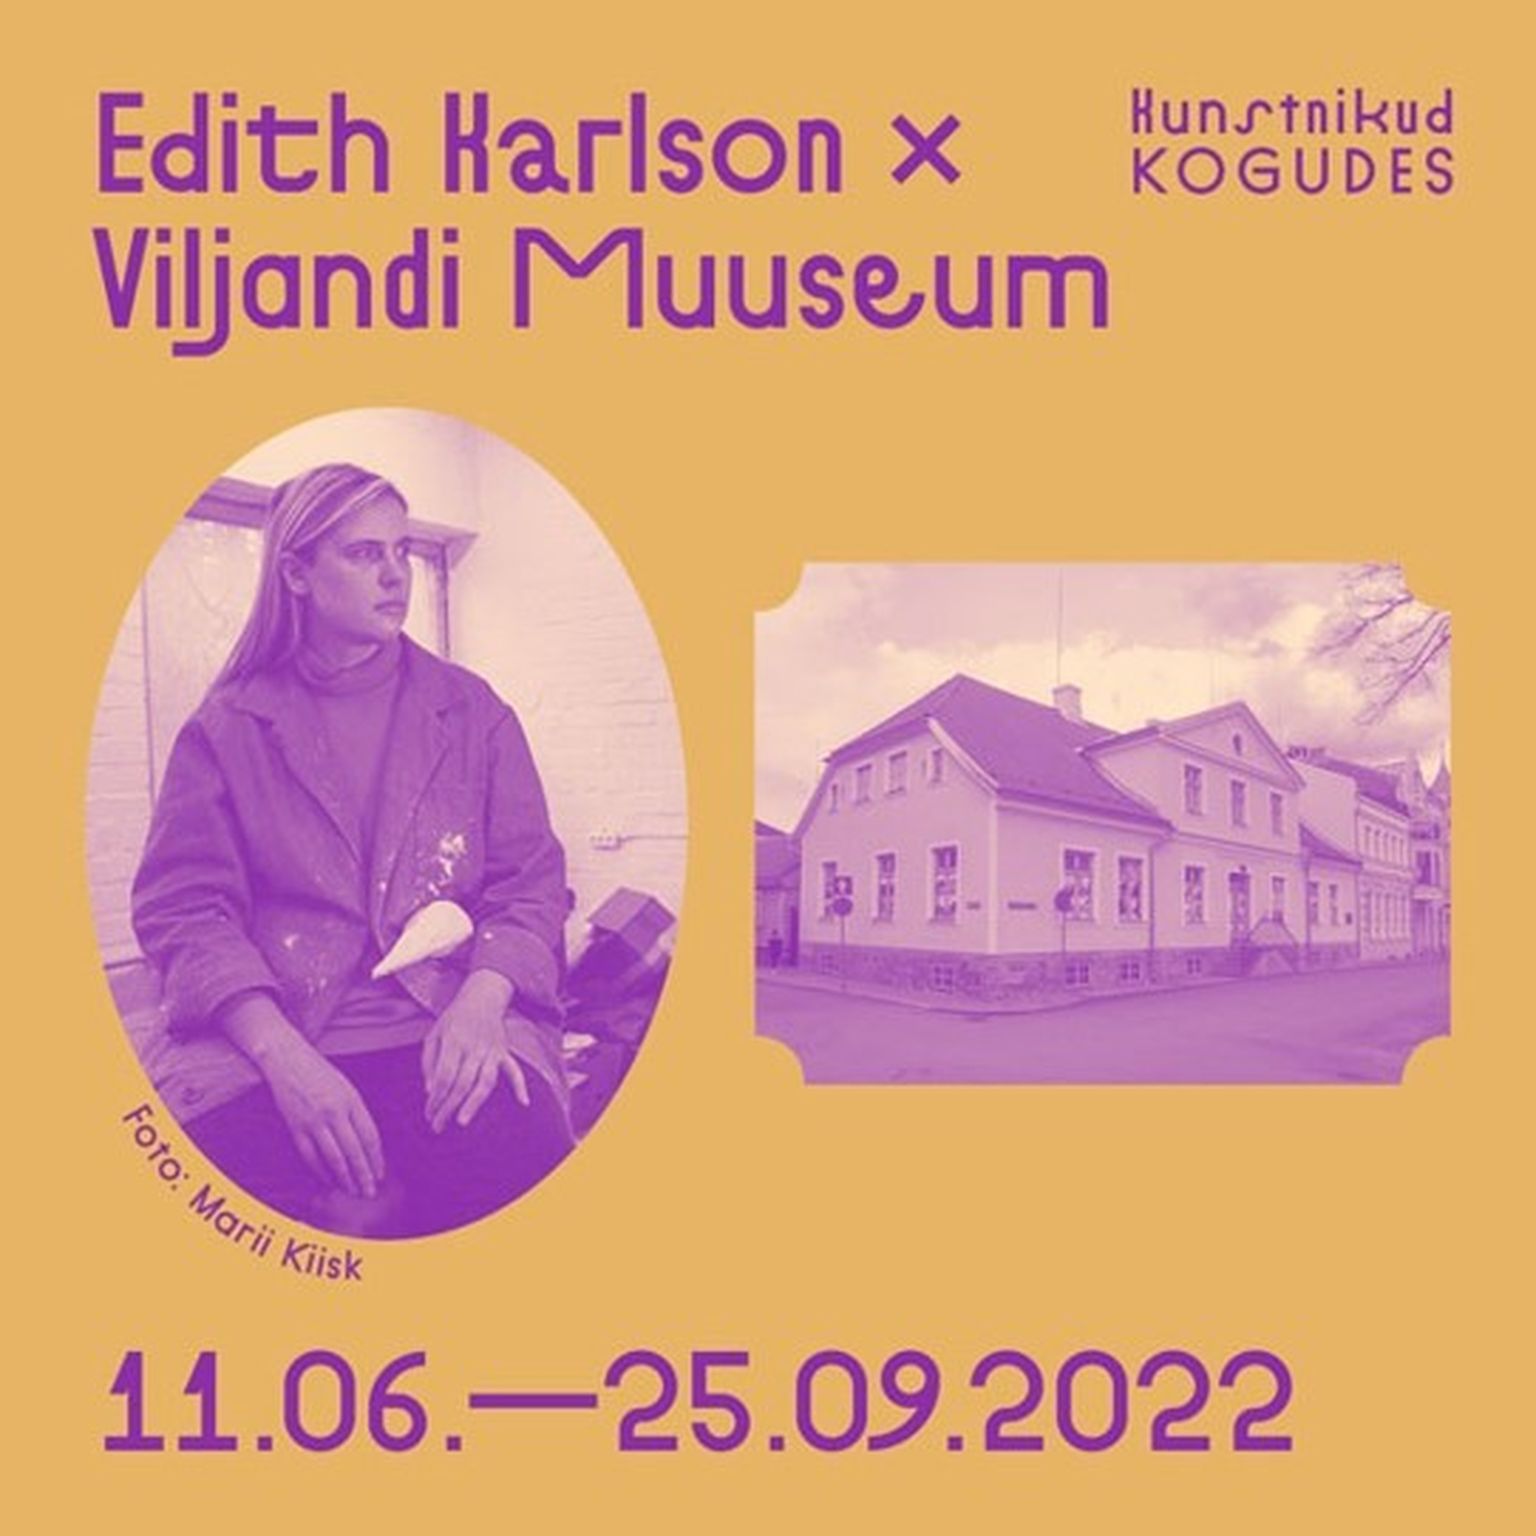 Viljandi muuseumis avab oma skulptuurinäituse Edith Karlson.